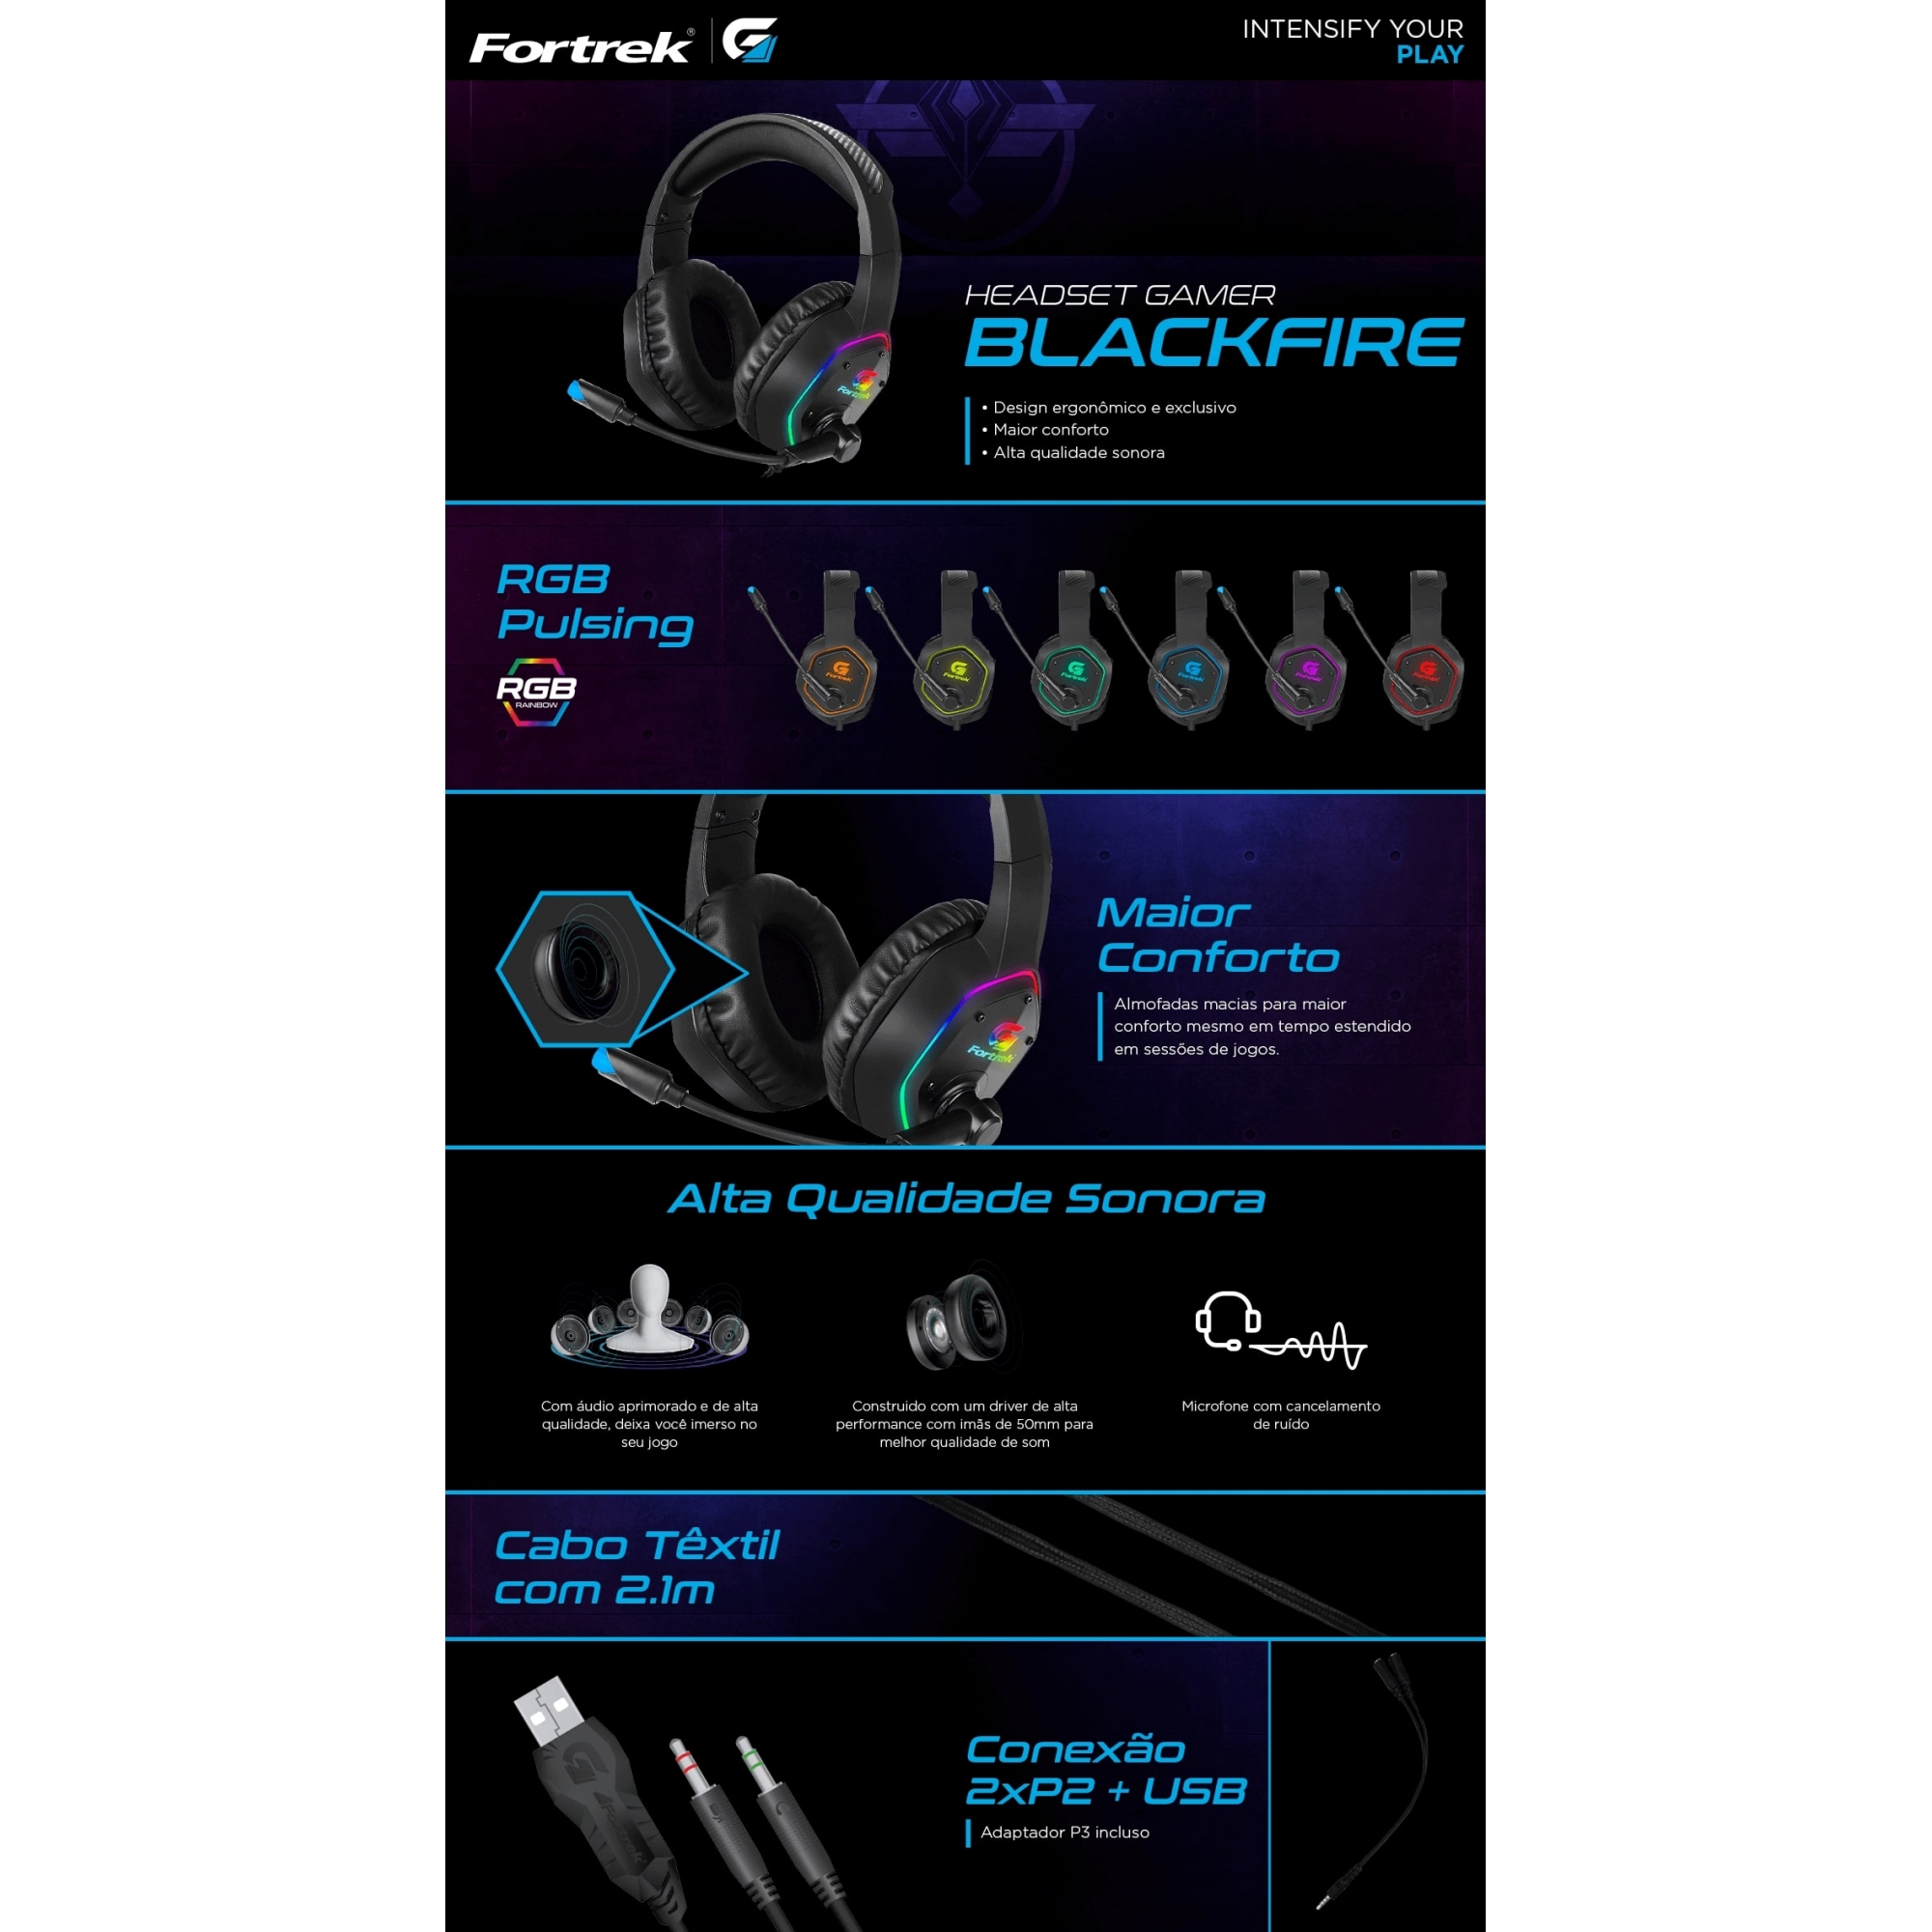 Kit Headset Gamer BlackFire Fortrek + Mouse Raptor Fortrek - Foto 2